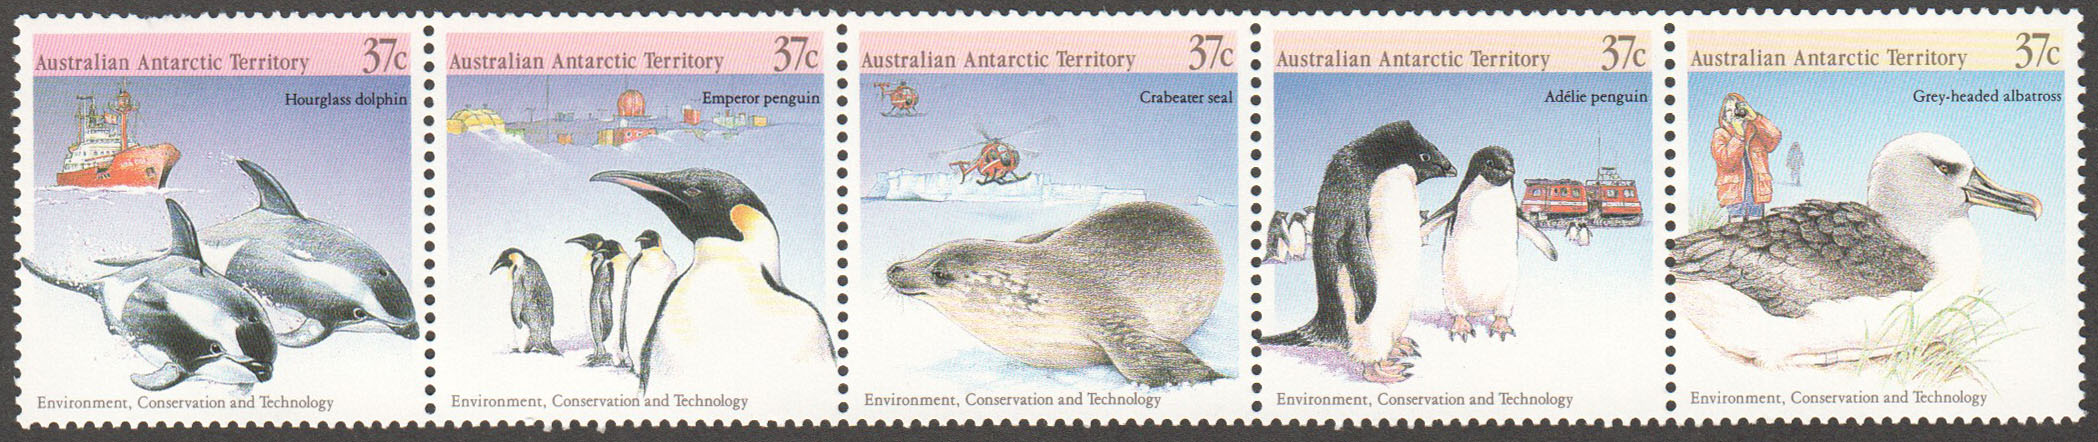 Australian Antarctic Territory Scott L76 MNH (A2-14) - Click Image to Close